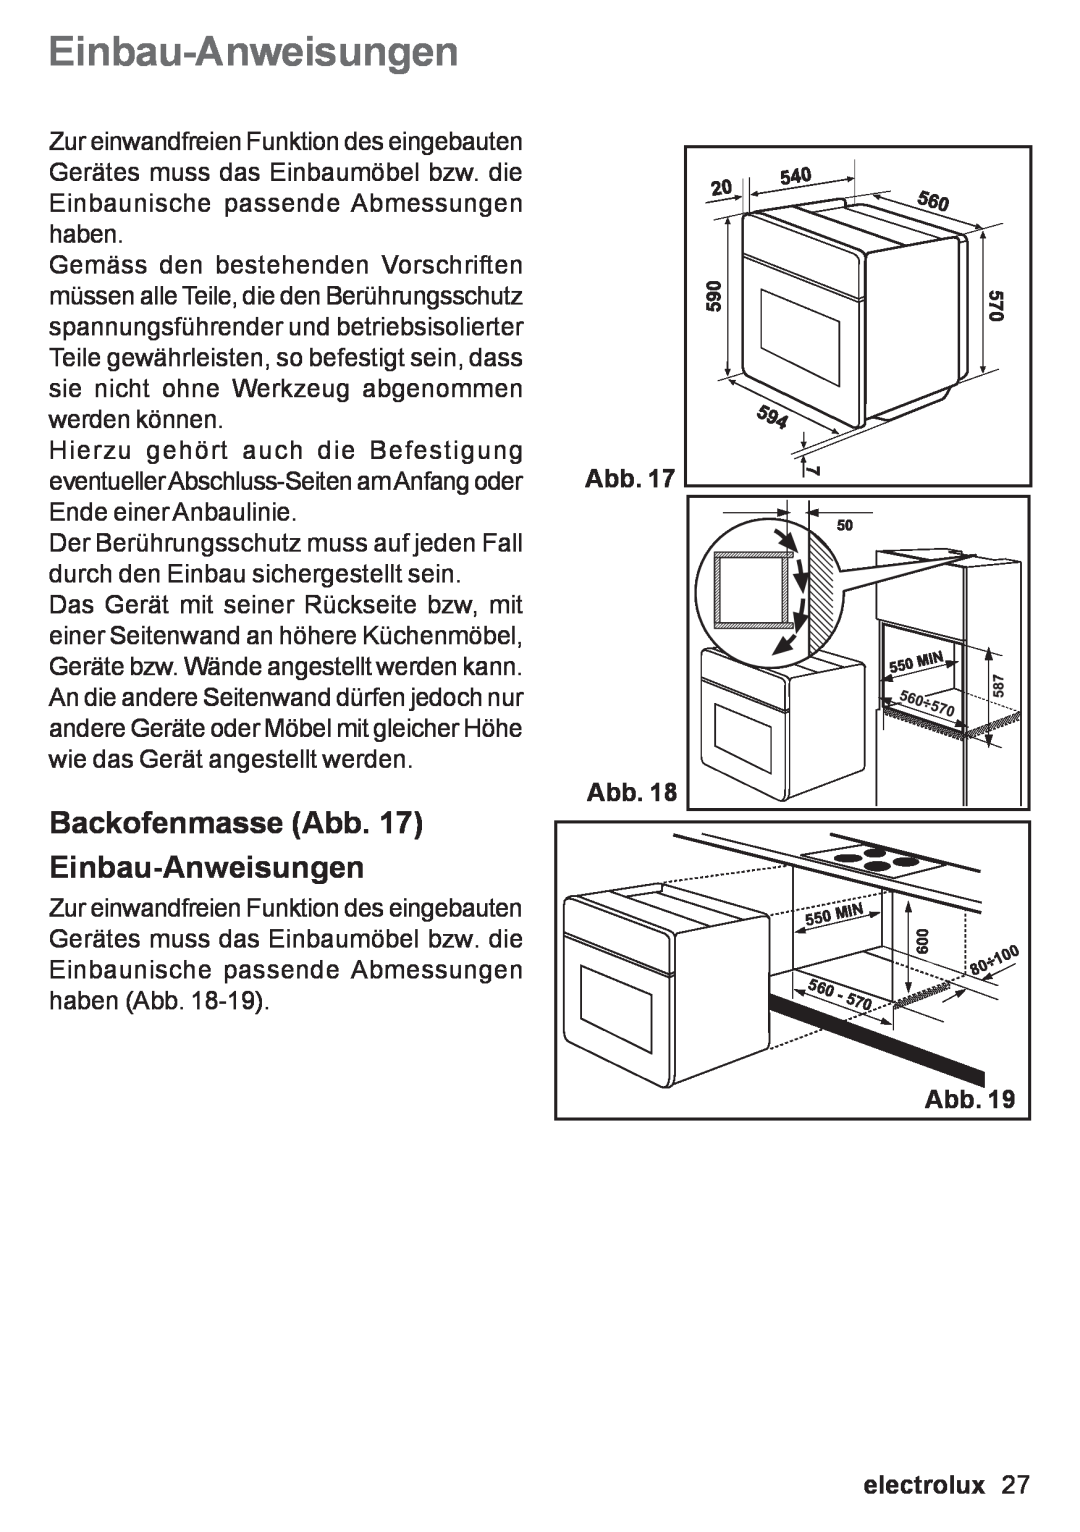 Electrolux EOB 53003 user manual Backofenmasse Abb. 17 Einbau-Anweisungen, Abb Abb, electrolux 